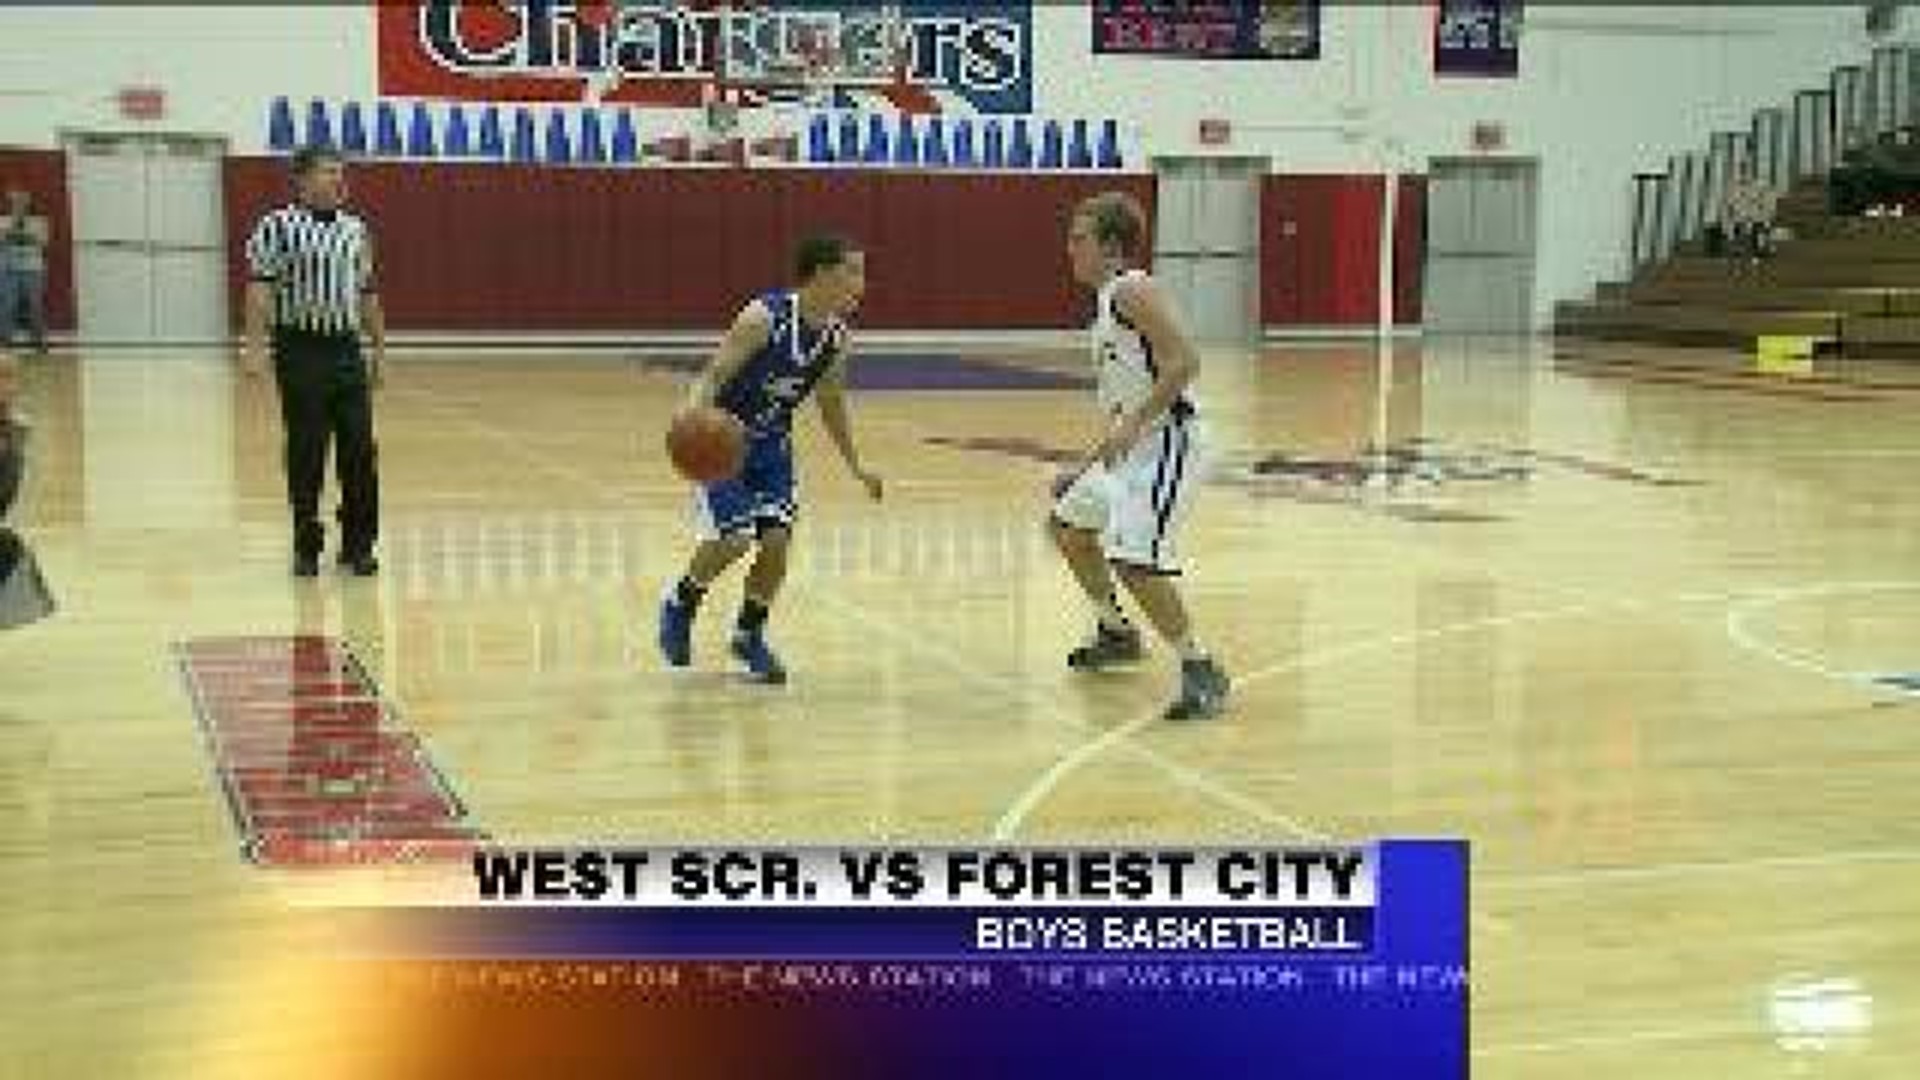 West Scranton vs Forest City